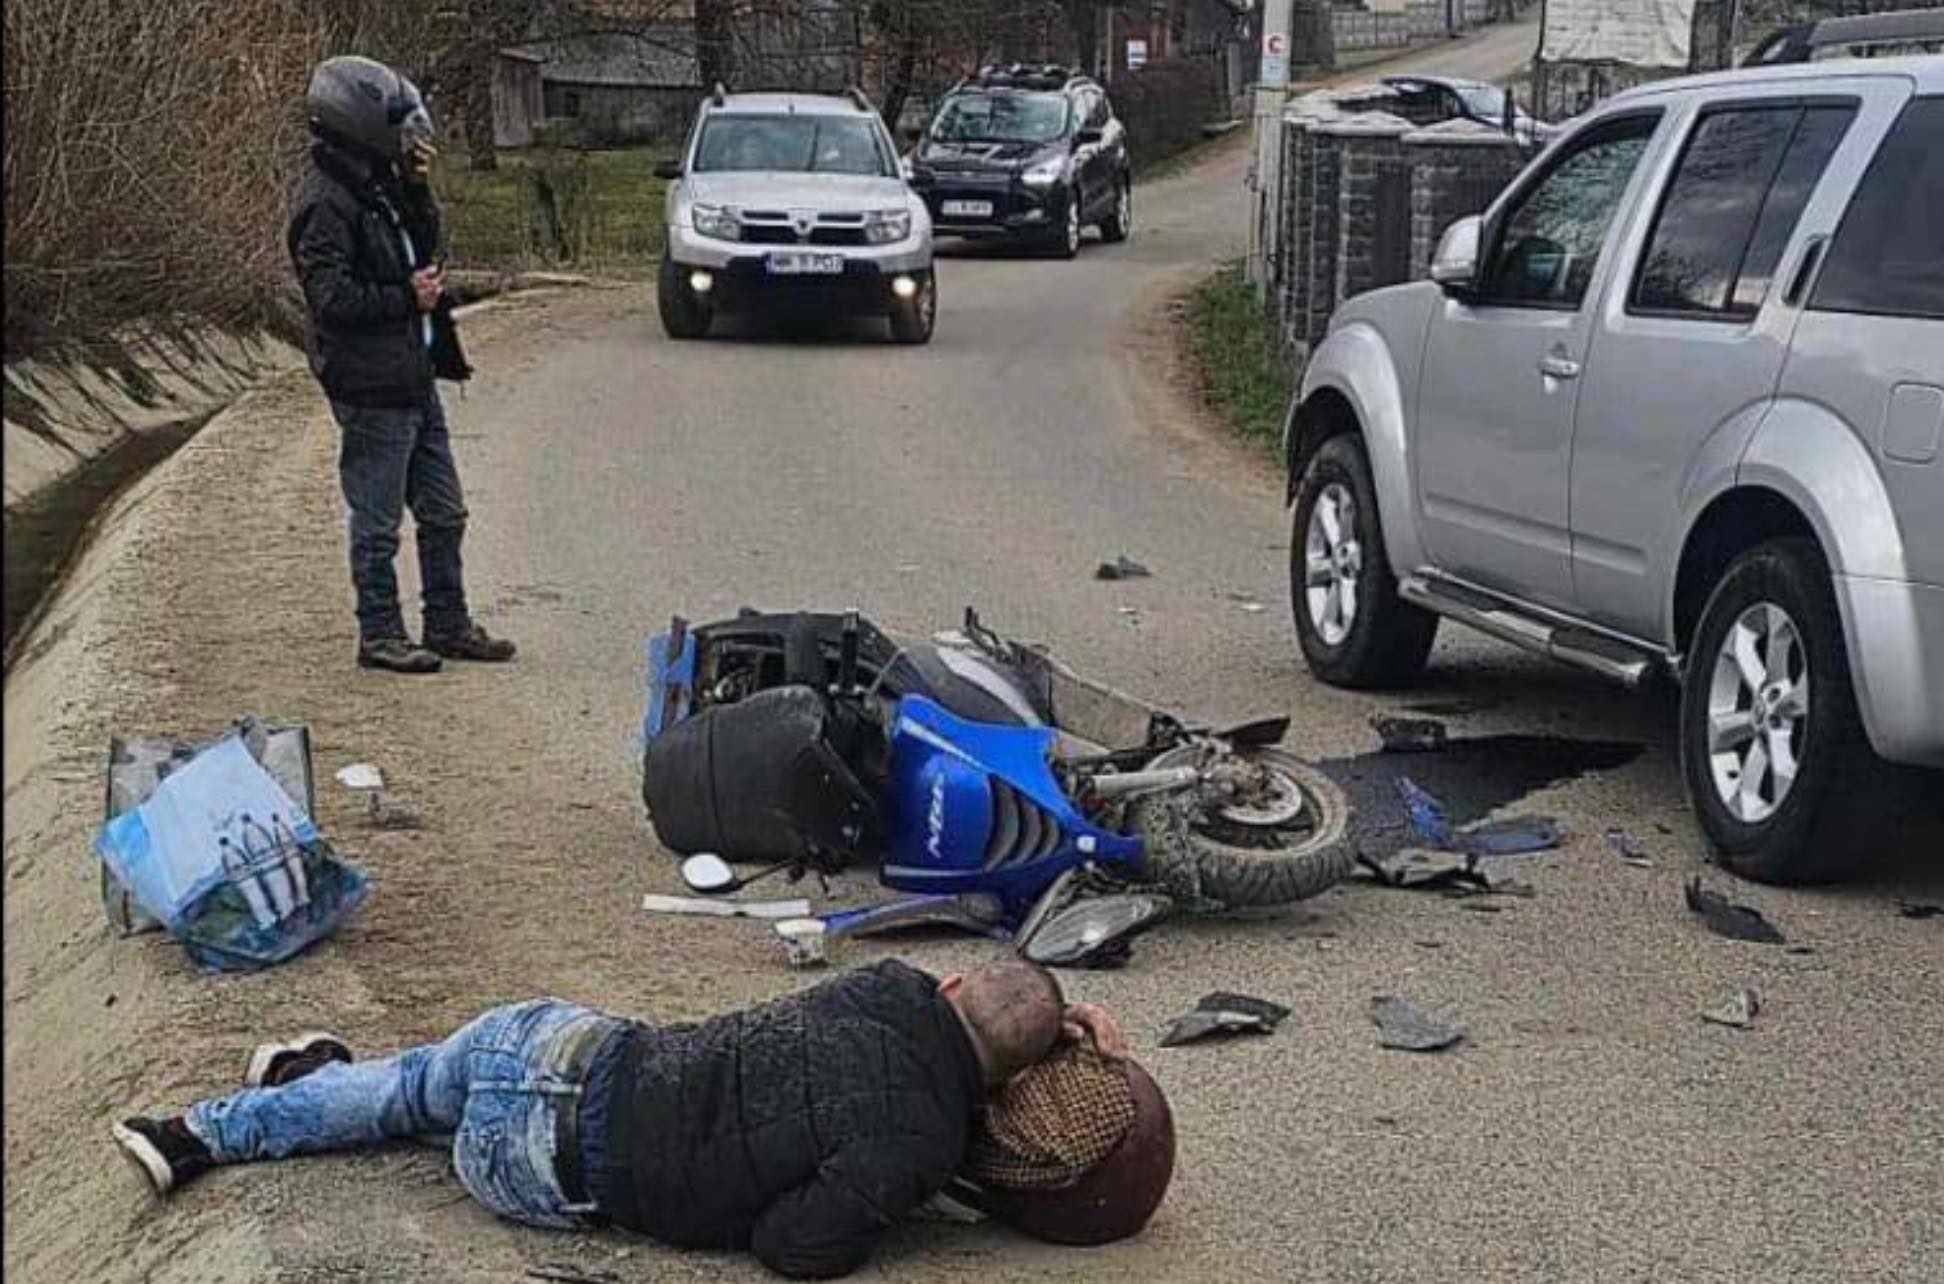 EXCLUSIV FOTO: Beat și fără permis a intrat cu mopedul într-un autoturism la Breb. Doi răniți